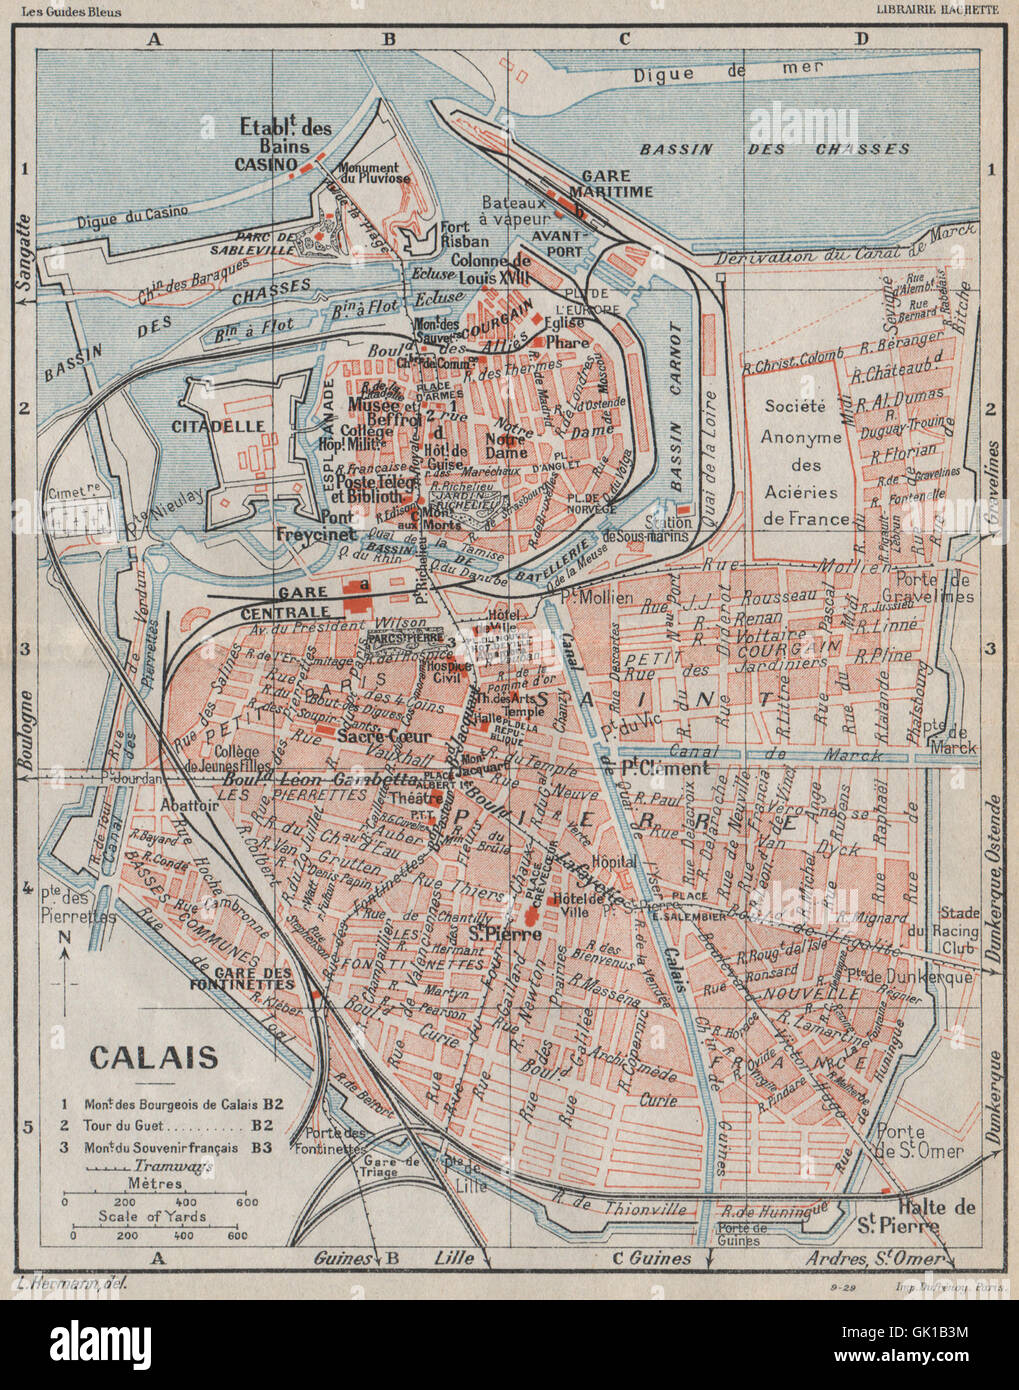 CALAIS. Vintage town city map plan. Pas-de-Calais, 1930 Stock Photo